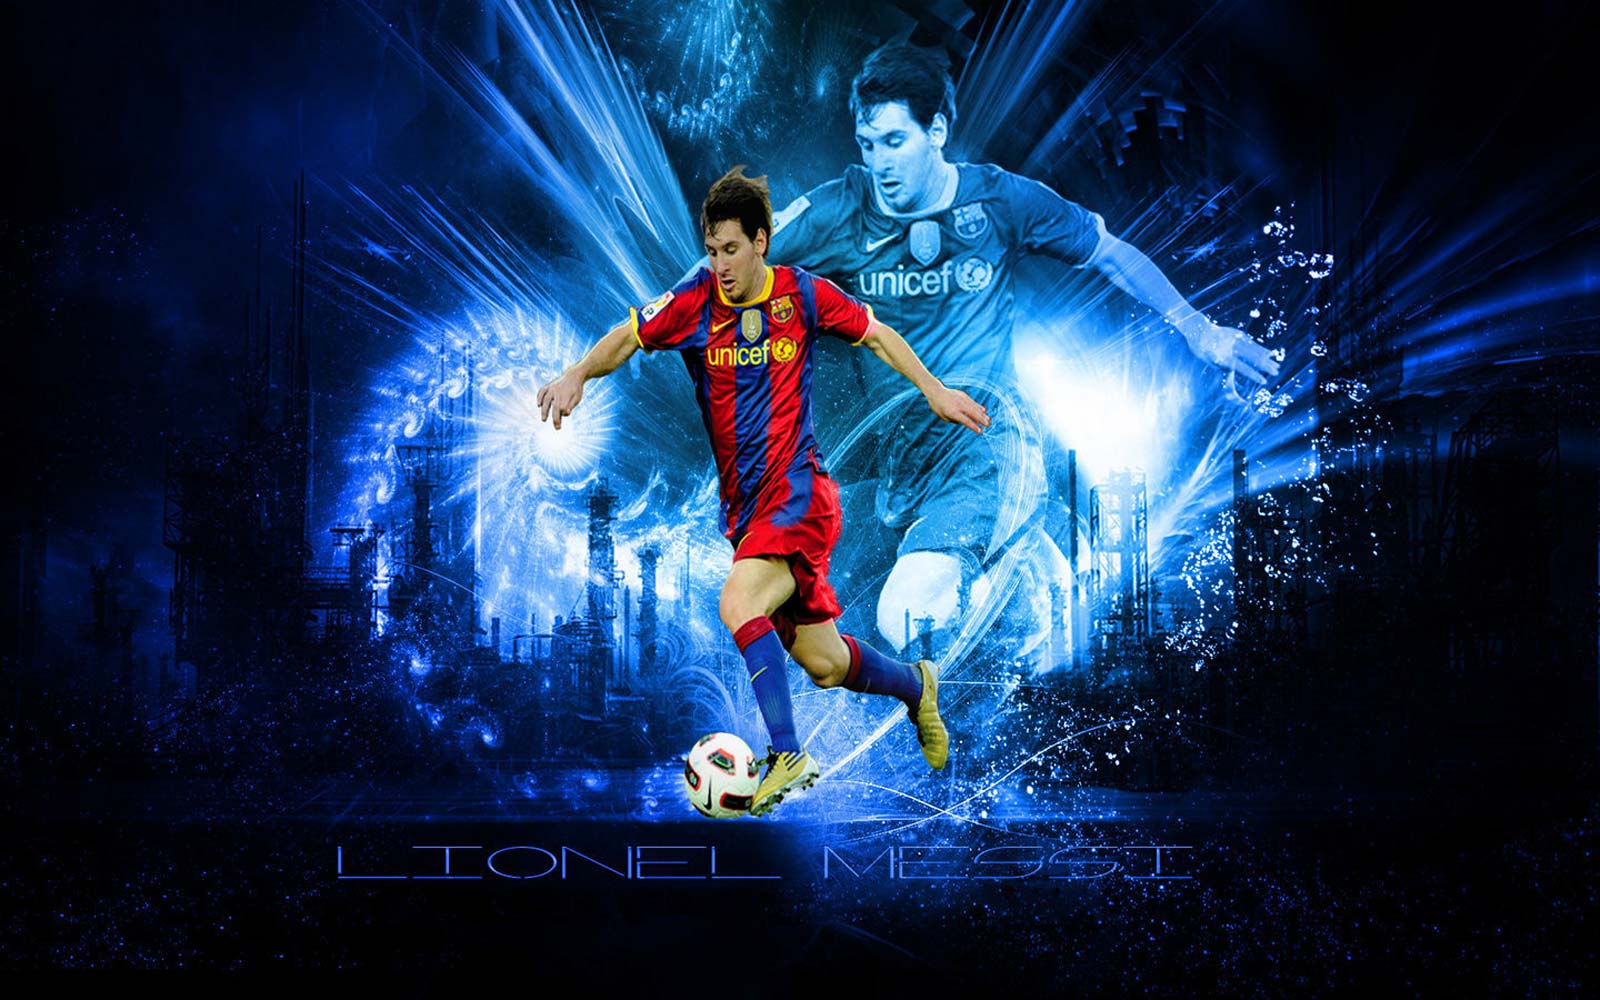 78+] Leo Messi Wallpaper - WallpaperSafari